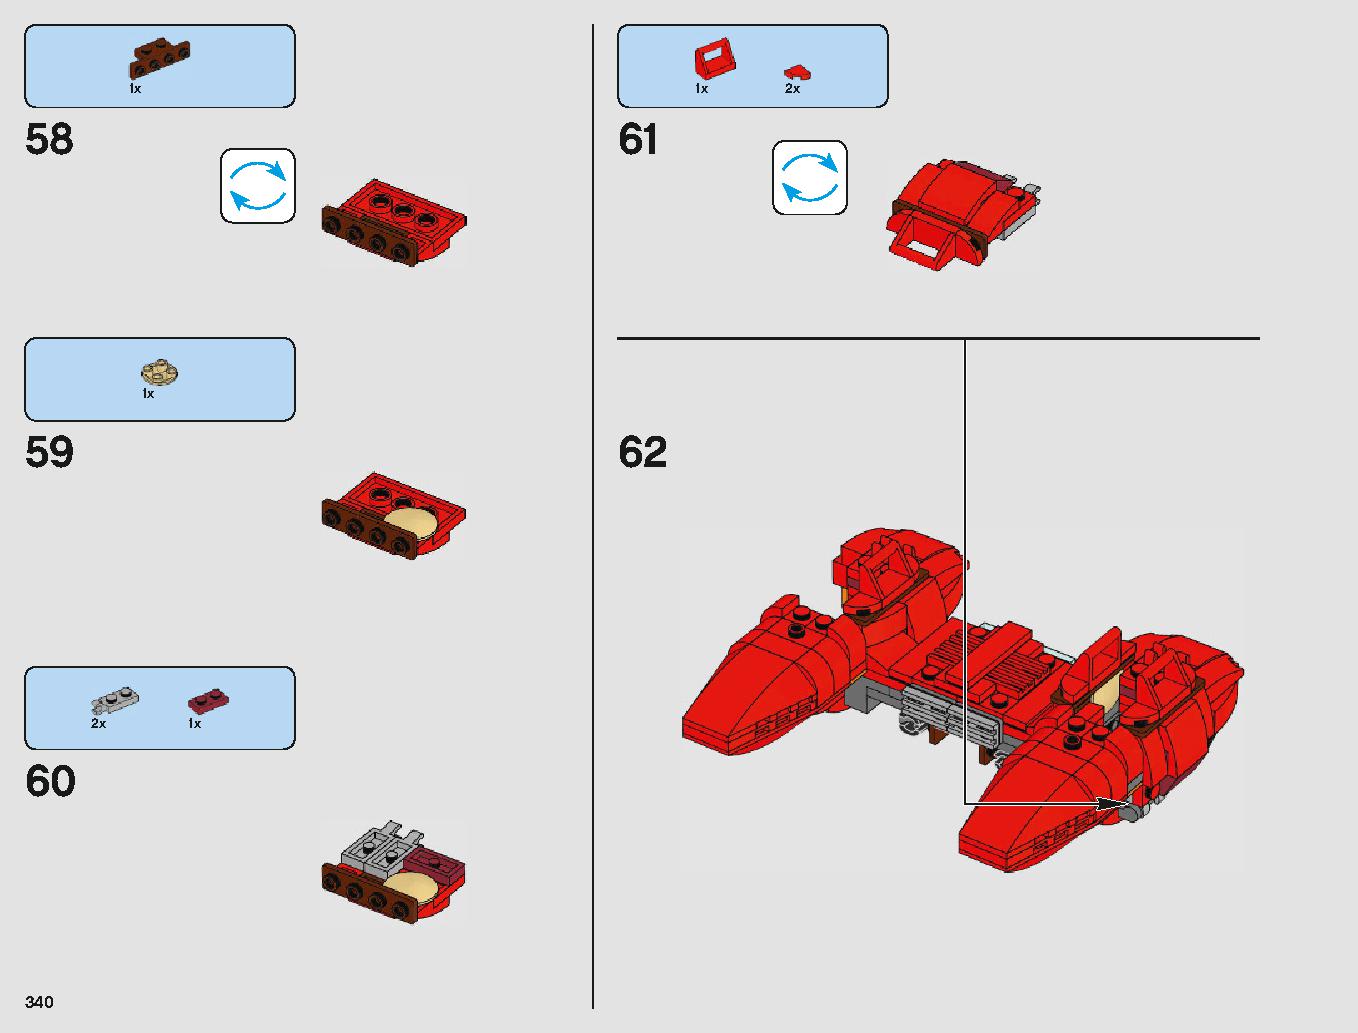 クラウド・シティ 75222 レゴの商品情報 レゴの説明書・組立方法 340 page